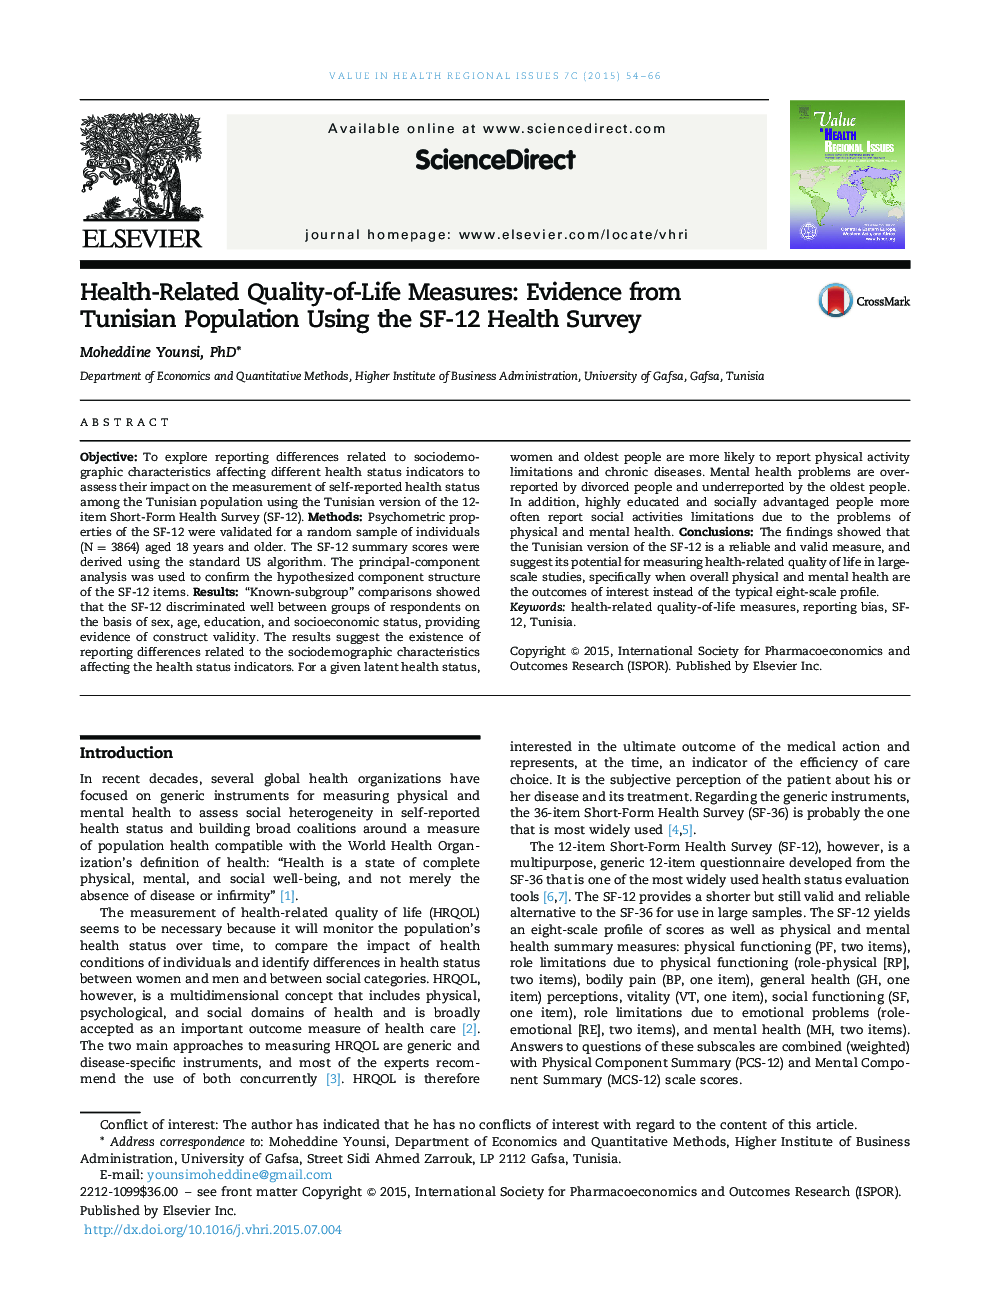 معیارهای کیفی زندگی مرتبط با سلامت: شواهدی از جمعیت تونس با استفاده از پرسشنامه SF-12